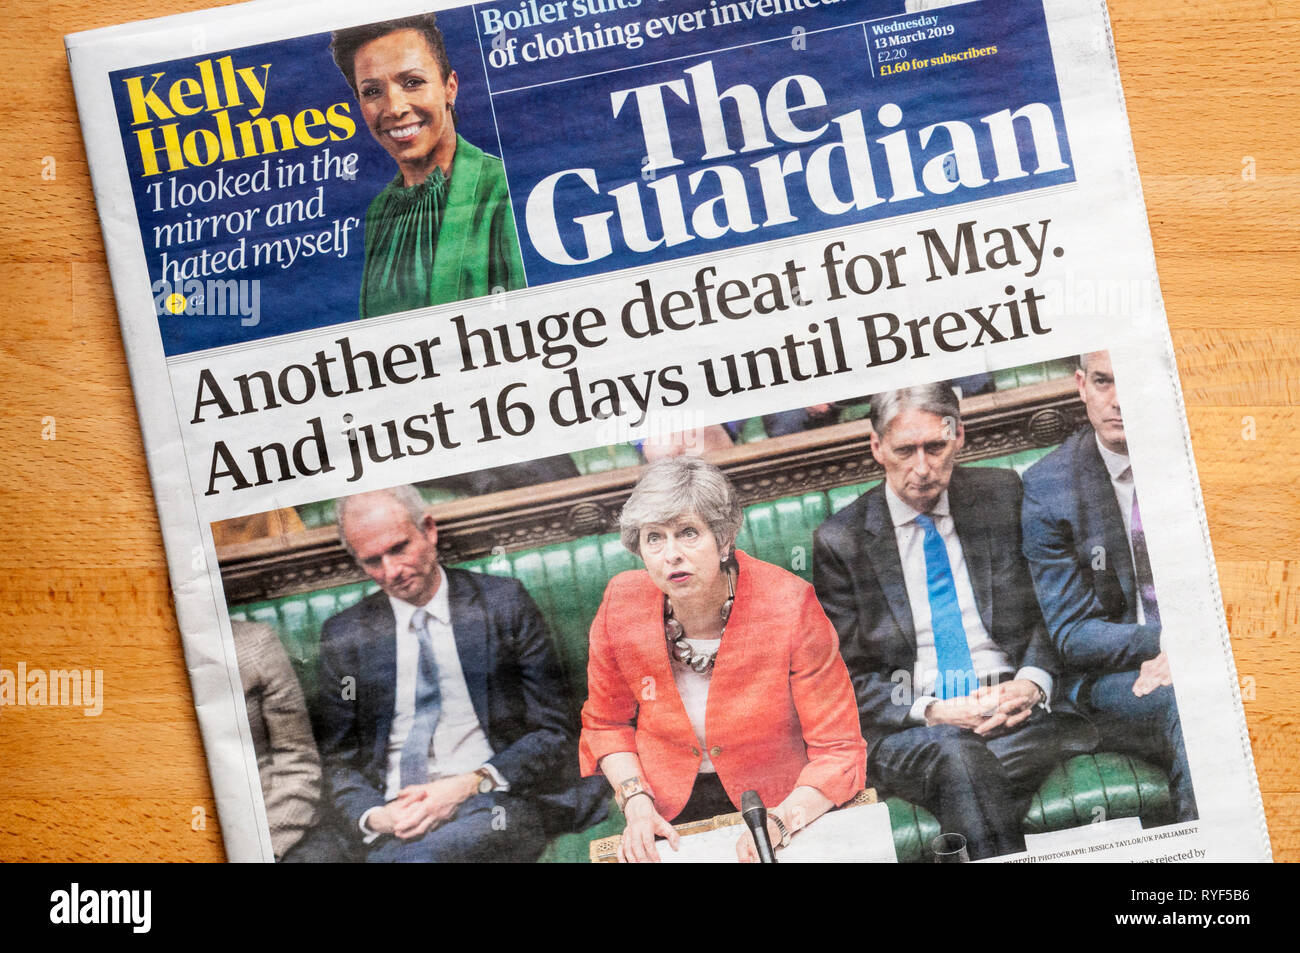 Pagina anteriore del quotidiano Guardian il 12 marzo 2019 dopo che il governo di seconda sconfitta di grandi dimensioni oltre i termini BREXIT per lasciare l'UE. Foto Stock